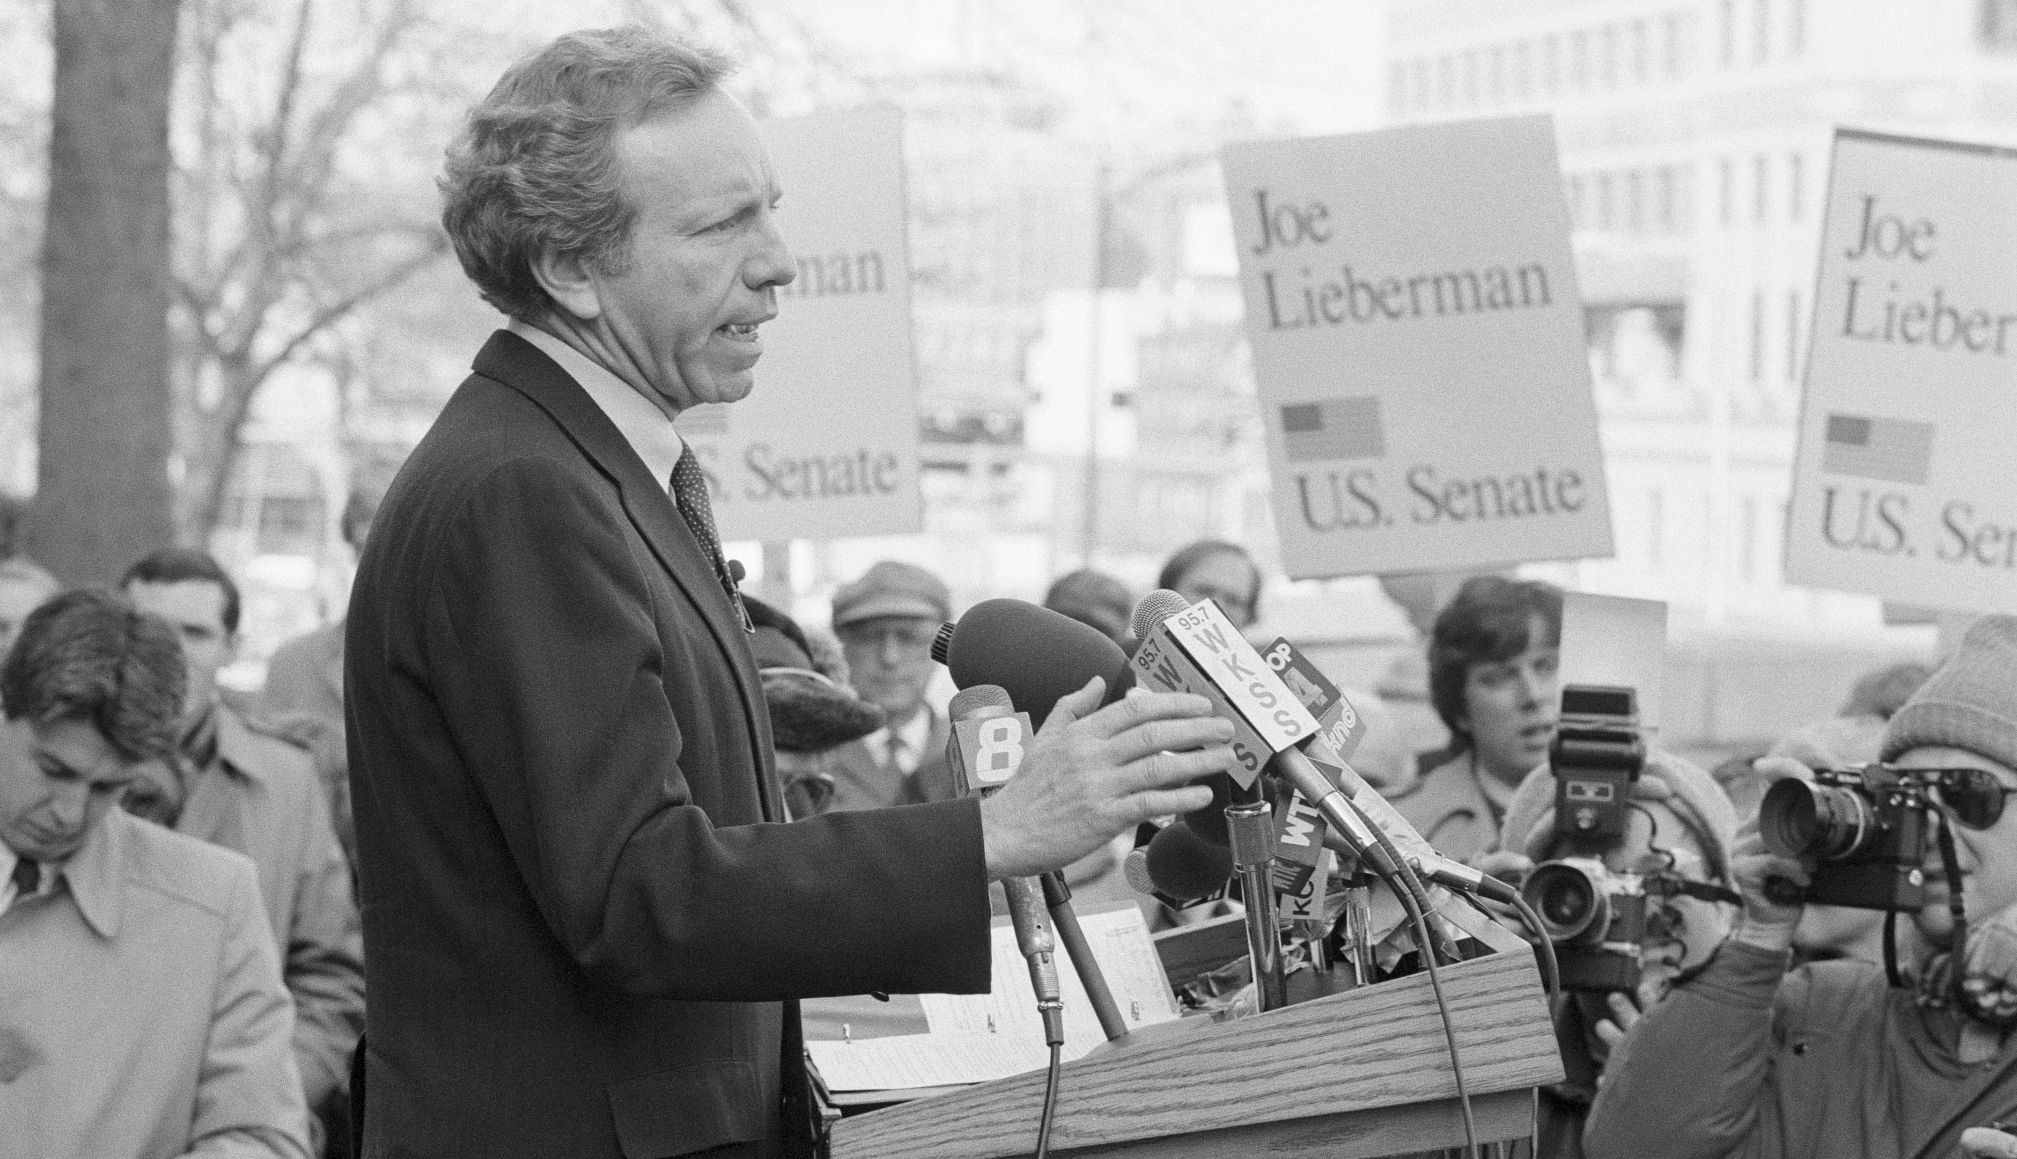 Joe Lieberman in 1988.